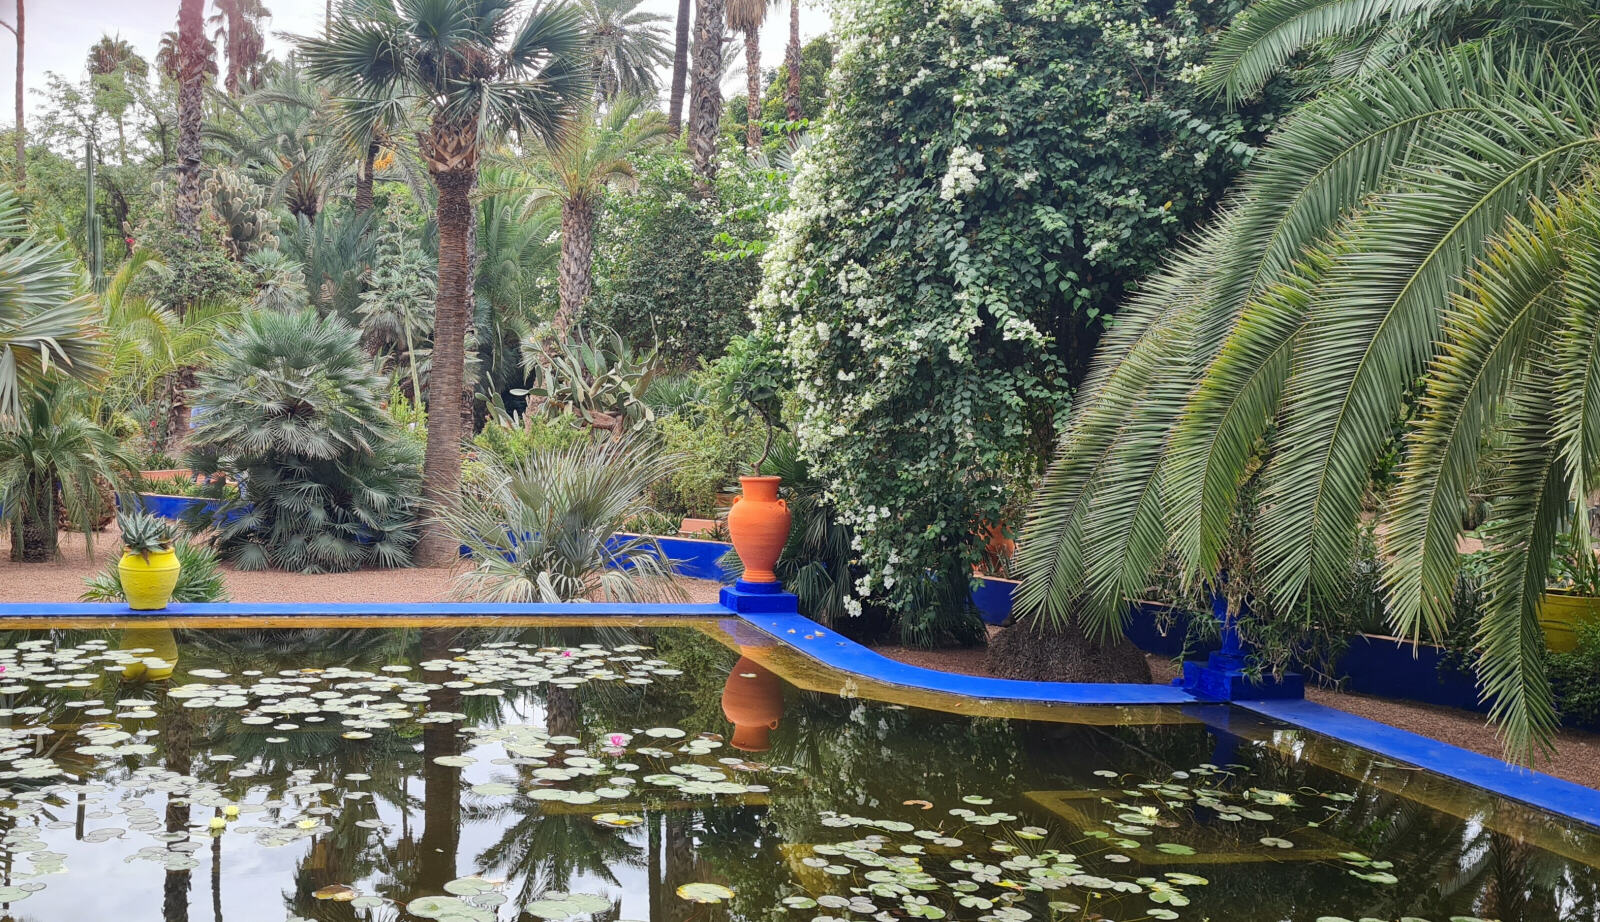 The Jardin Majorelle in Marrakech